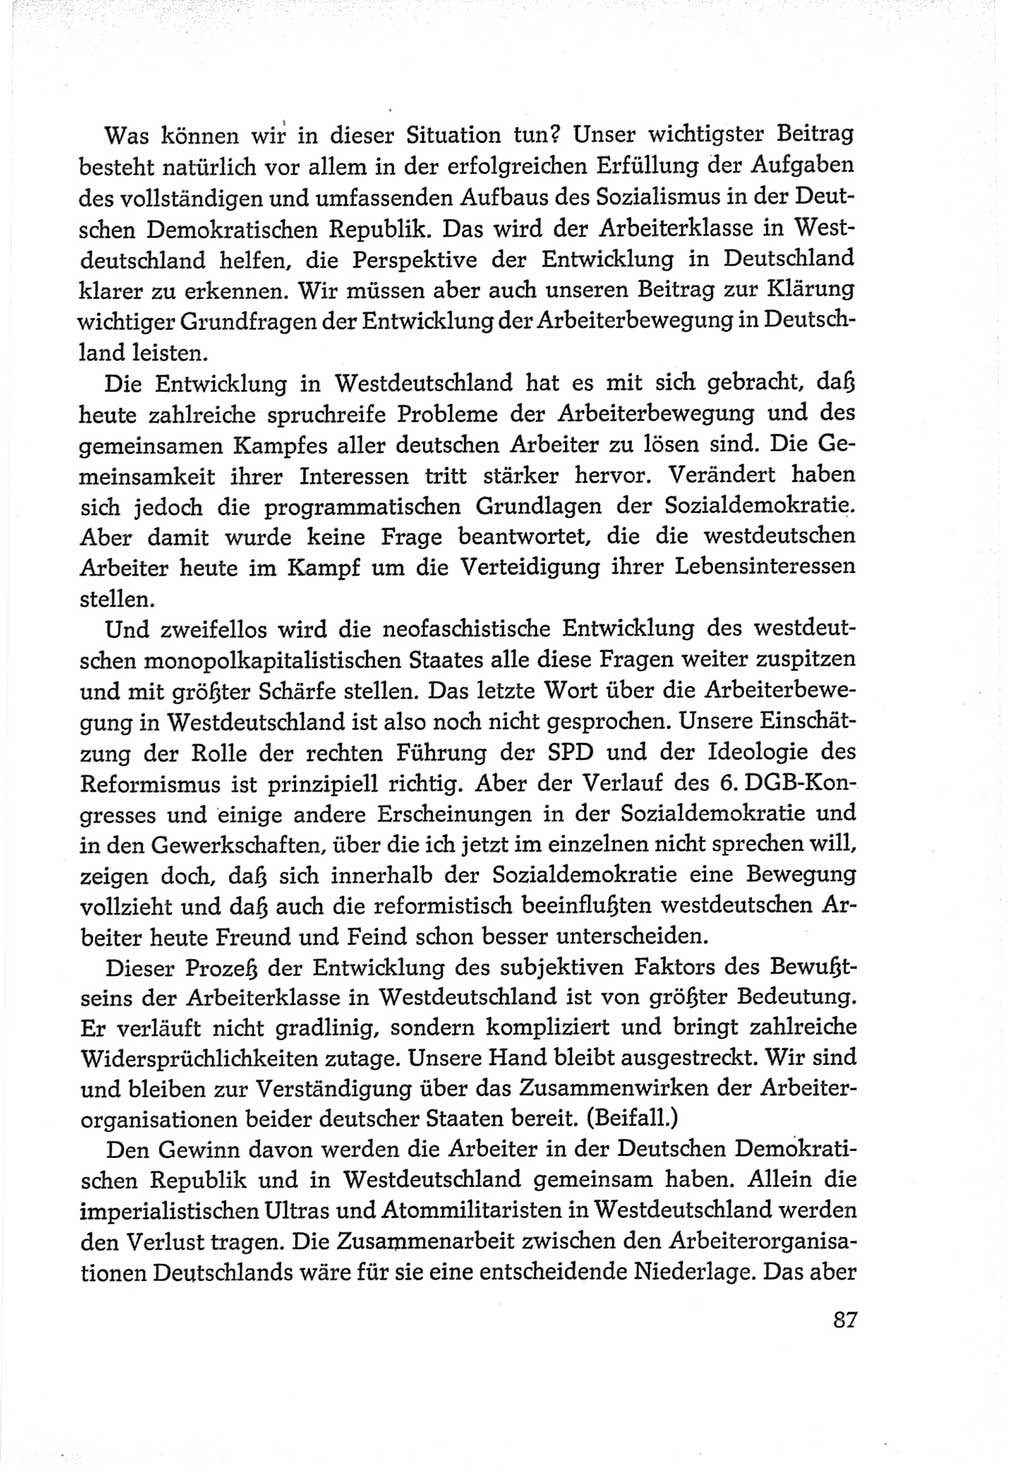 Protokoll der Verhandlungen des Ⅵ. Parteitages der Sozialistischen Einheitspartei Deutschlands (SED) [Deutsche Demokratische Republik (DDR)] 1963, Band Ⅱ, Seite 87 (Prot. Verh. Ⅵ. PT SED DDR 1963, Bd. Ⅱ, S. 87)